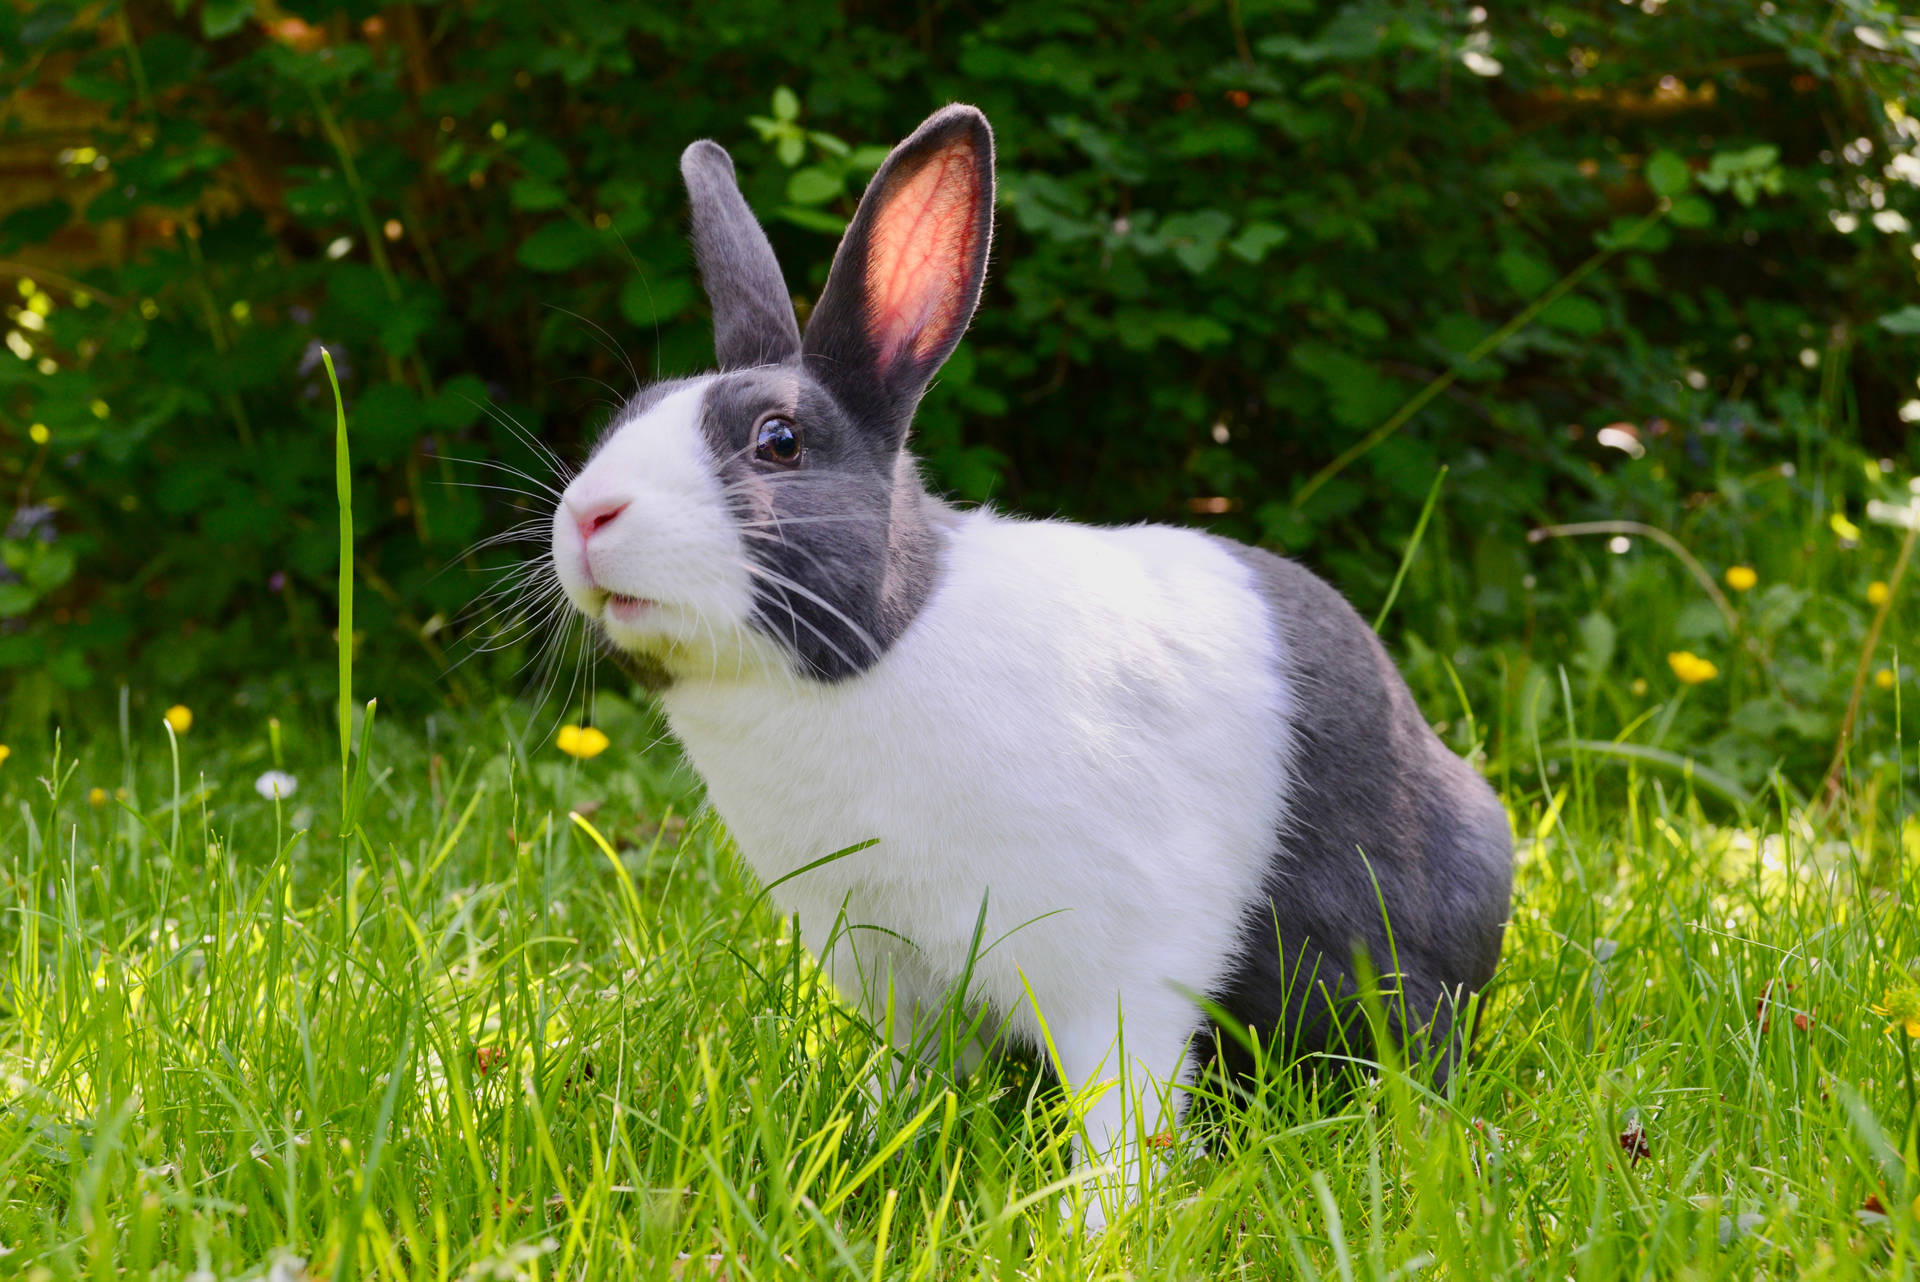 Cute Animal Rabbit In Garden